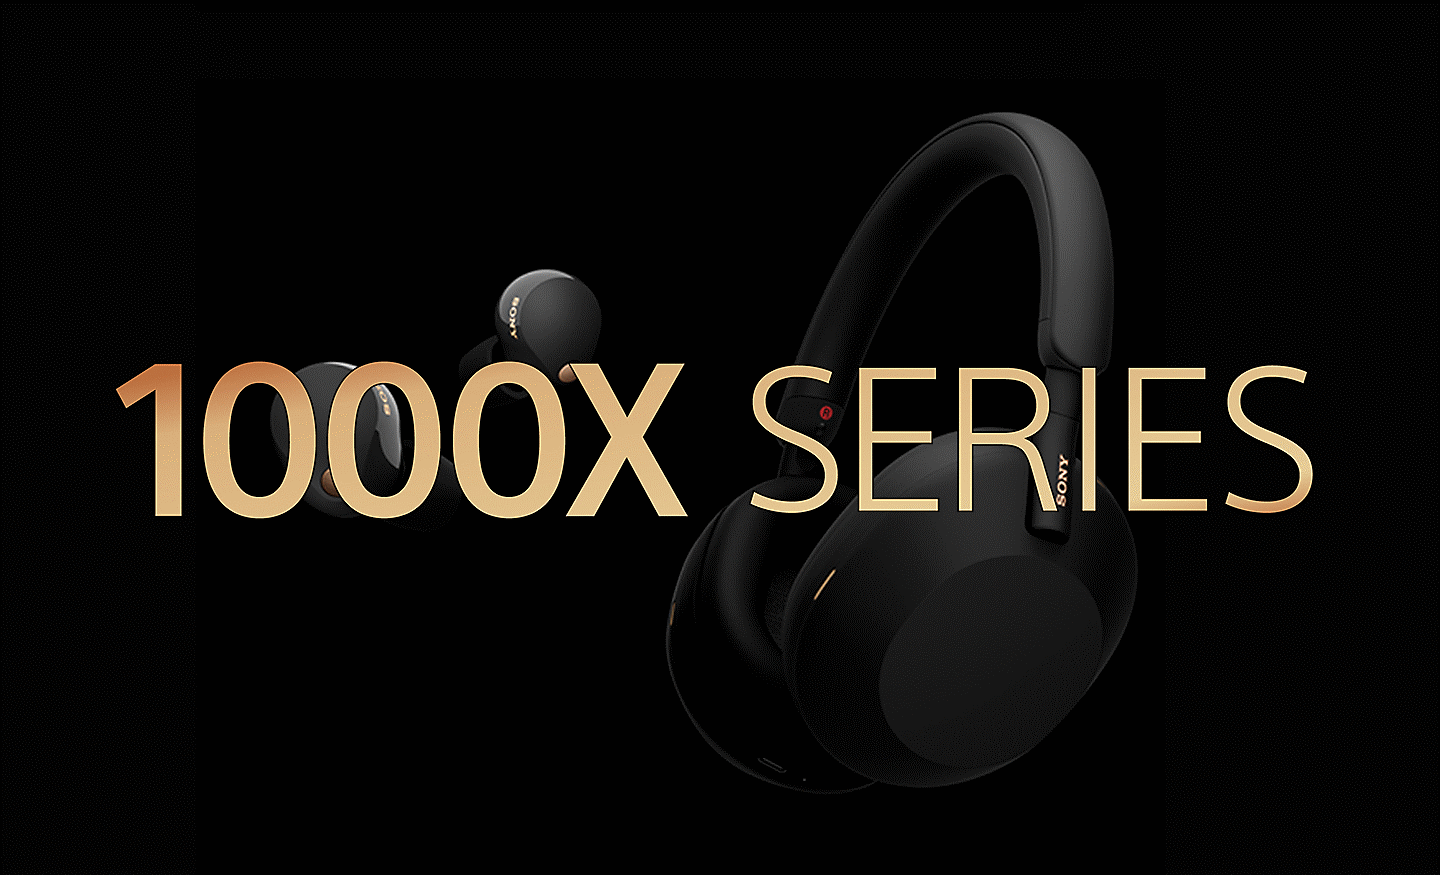 ภาพชุดหูฟัง Sony สองชุดบนฉากหลังสีดำพร้อมข้อความว่าซีรีส์ 1000X สีทองด้านหน้า